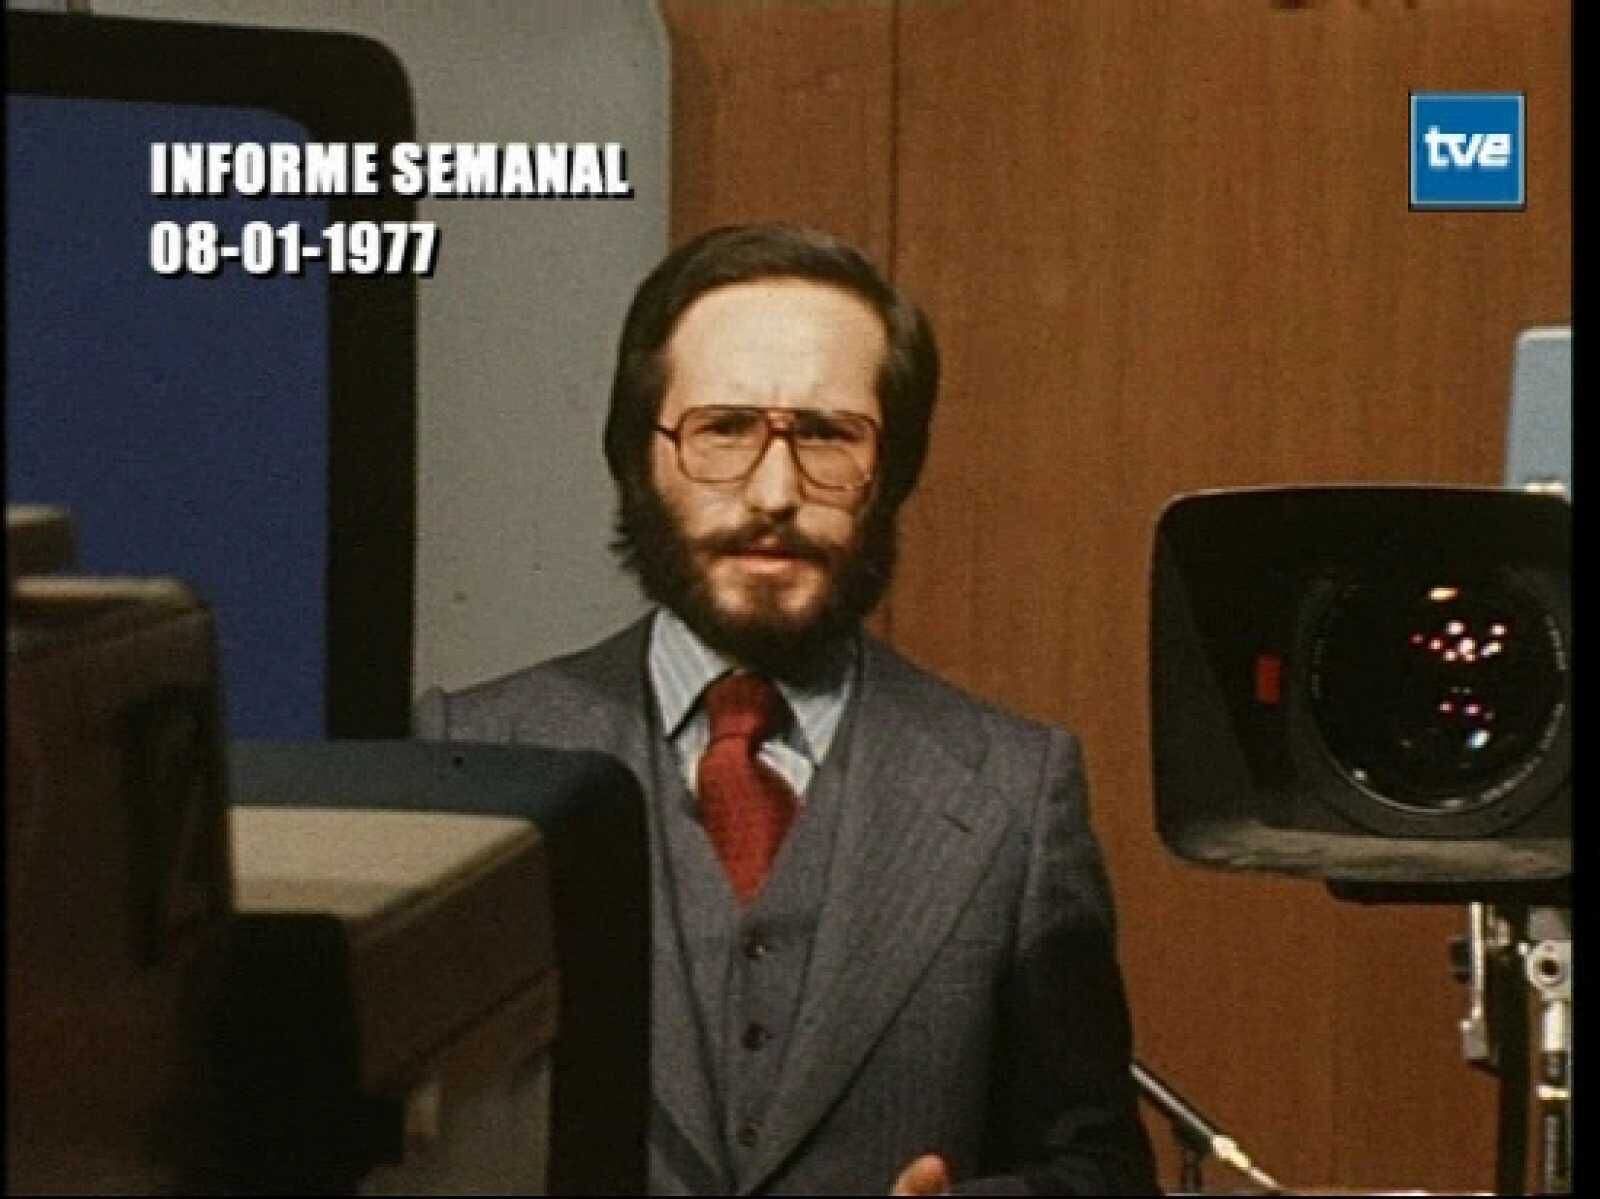 Pedro Erquicia, primer director y presentador de 'Informe semanal', en una imagen de 1977.